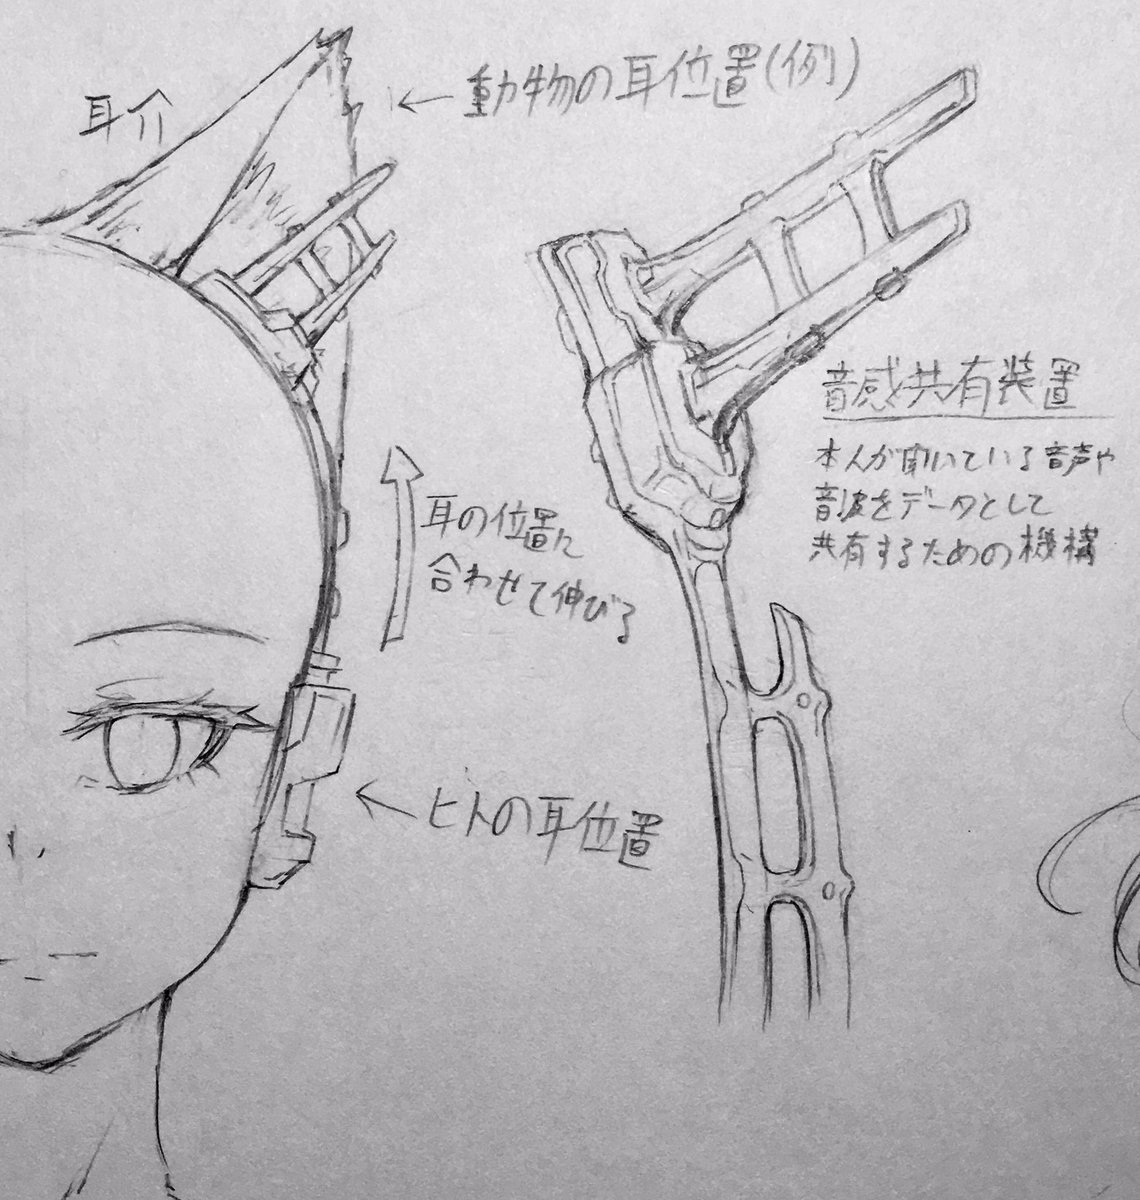 #戦闘技術革新生物
 耳の形状、構造が変化するとそれに合わせてヘッドセットも変形します。 